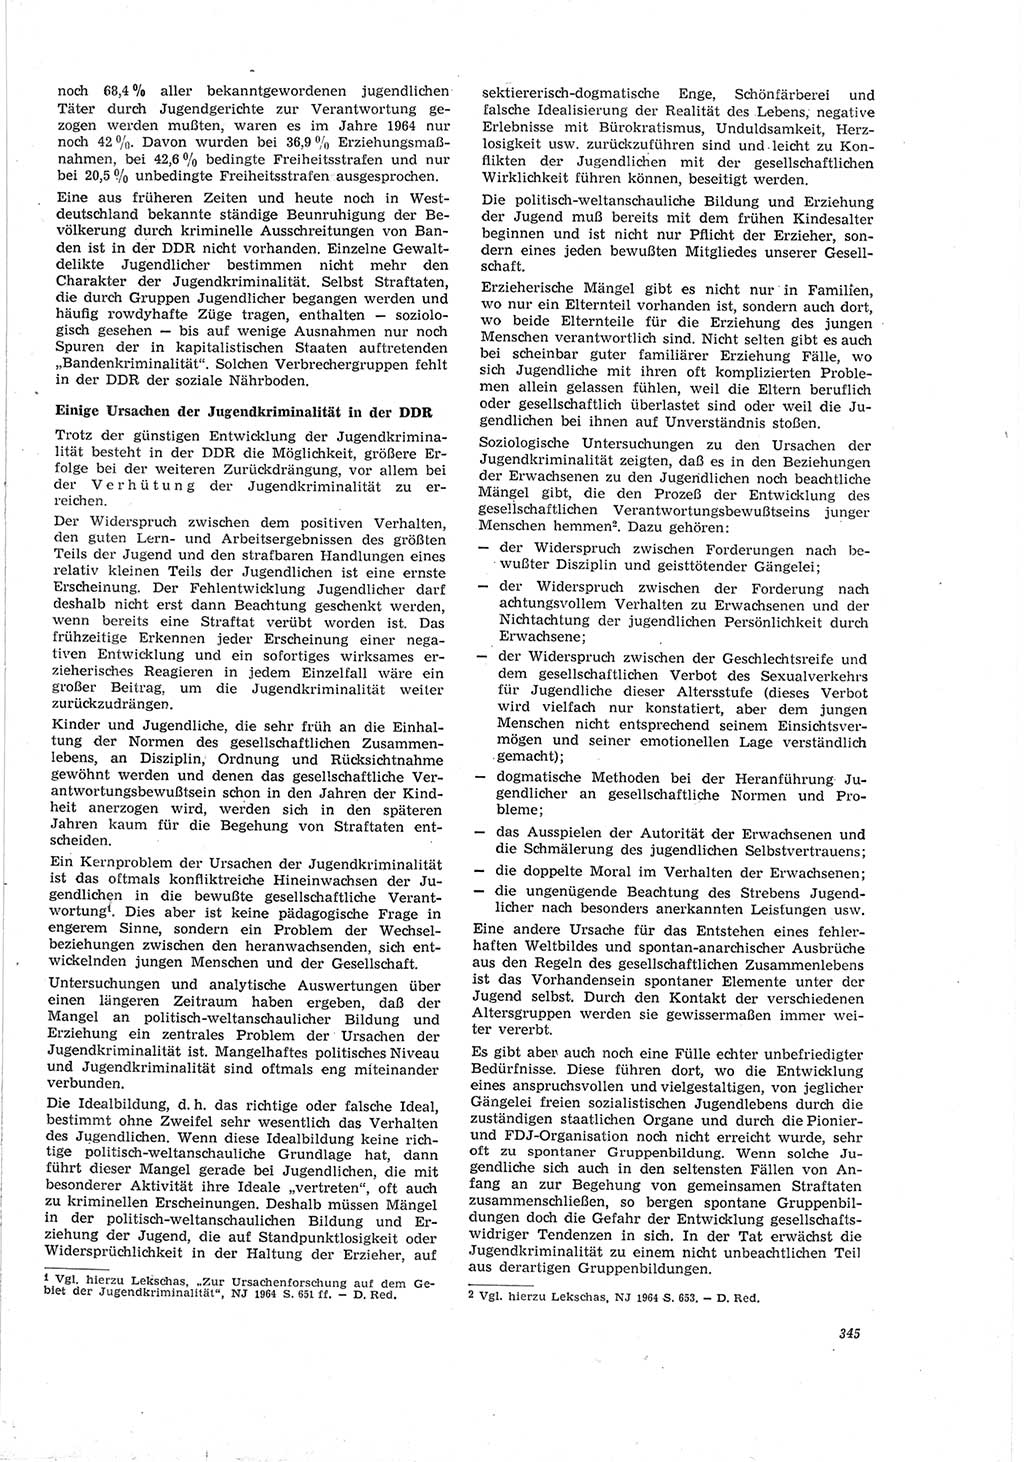 Neue Justiz (NJ), Zeitschrift für Recht und Rechtswissenschaft [Deutsche Demokratische Republik (DDR)], 19. Jahrgang 1965, Seite 345 (NJ DDR 1965, S. 345)